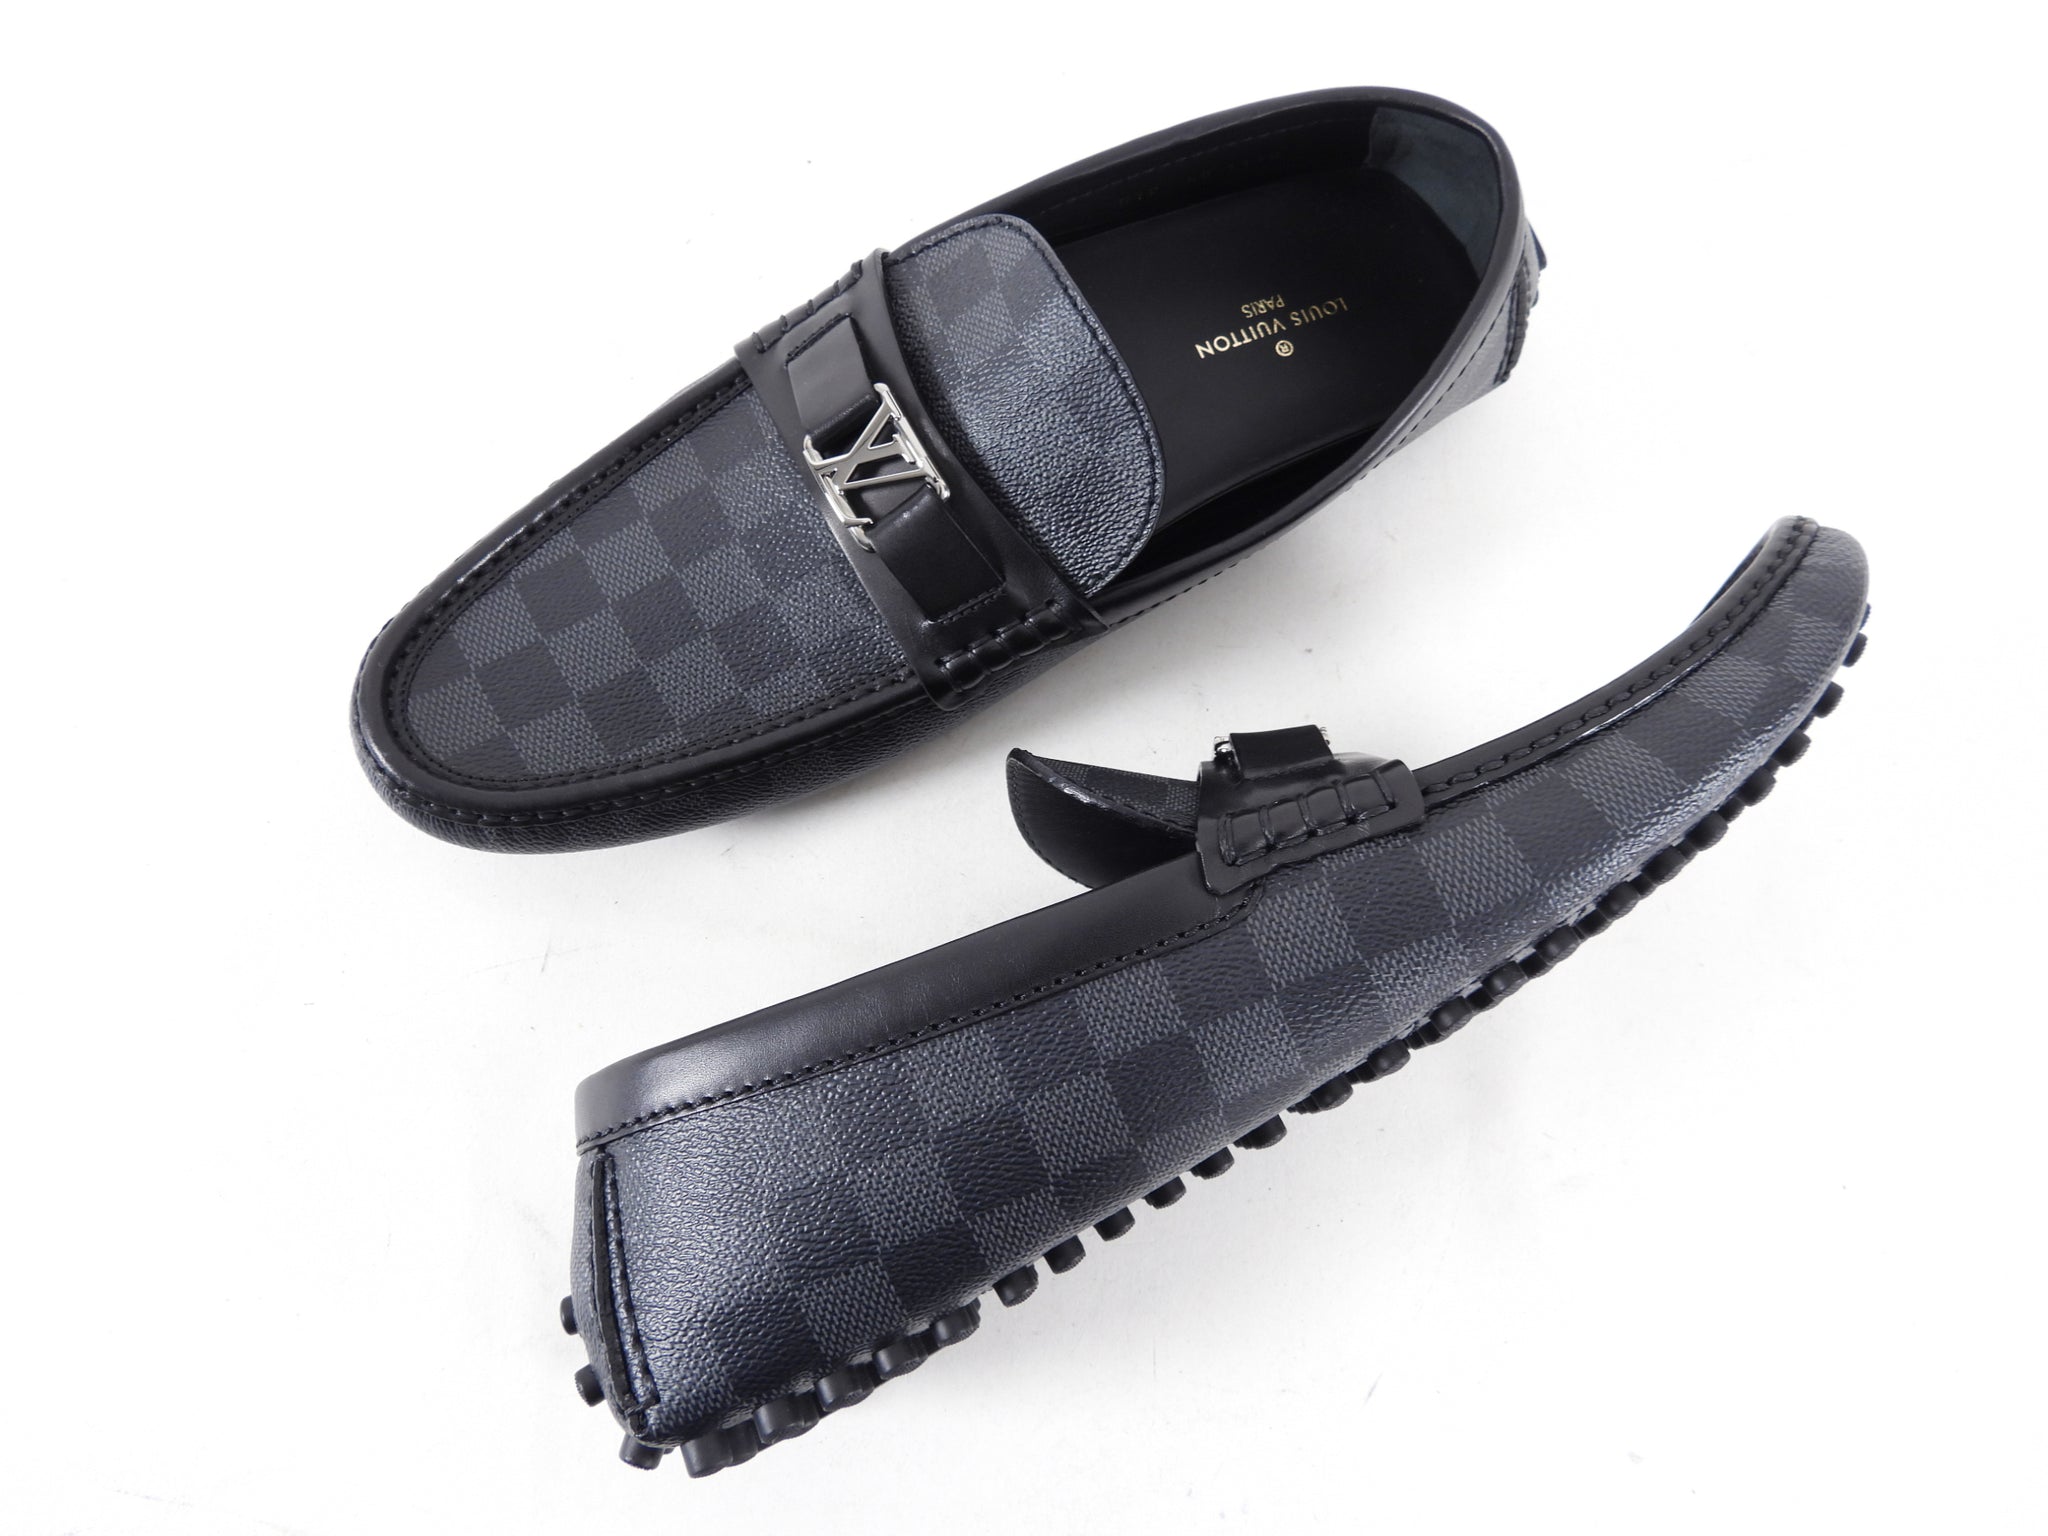 Louis Vuitton, Shoes, Louis Vuitton Hockenheim Moccasin